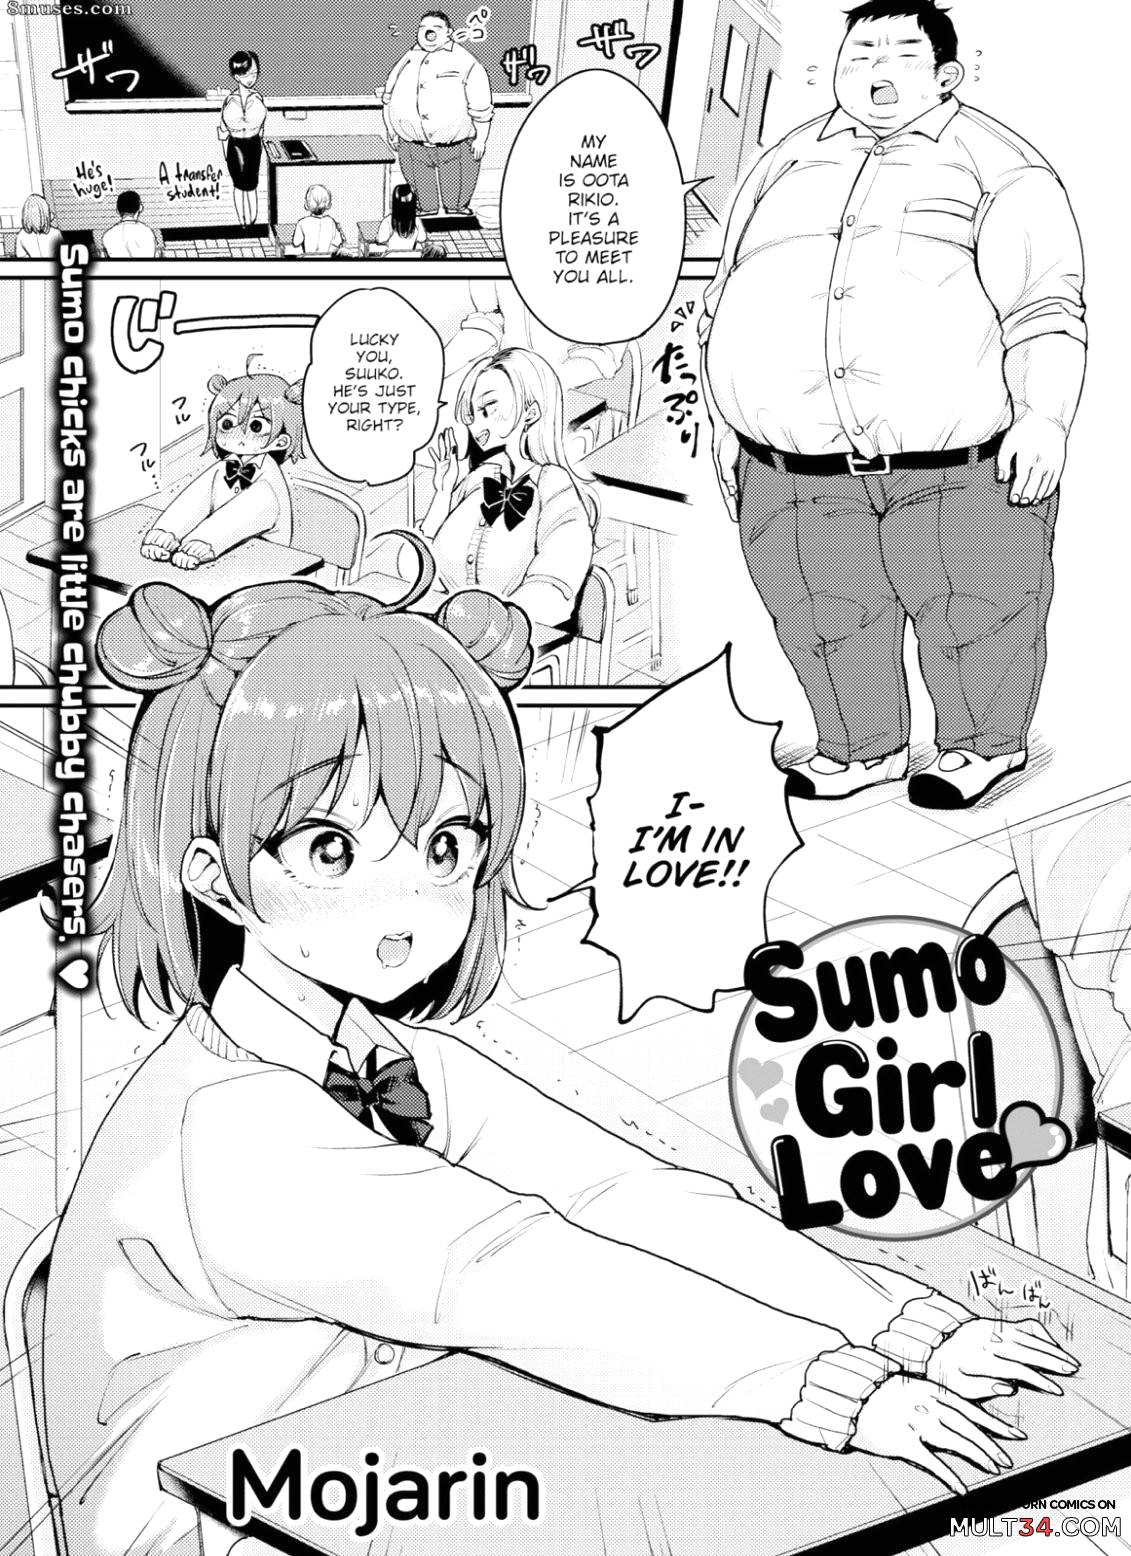 Sumo Cartoon Sex - Sumo Girl Love porn comic - the best cartoon porn comics, Rule 34 | MULT34